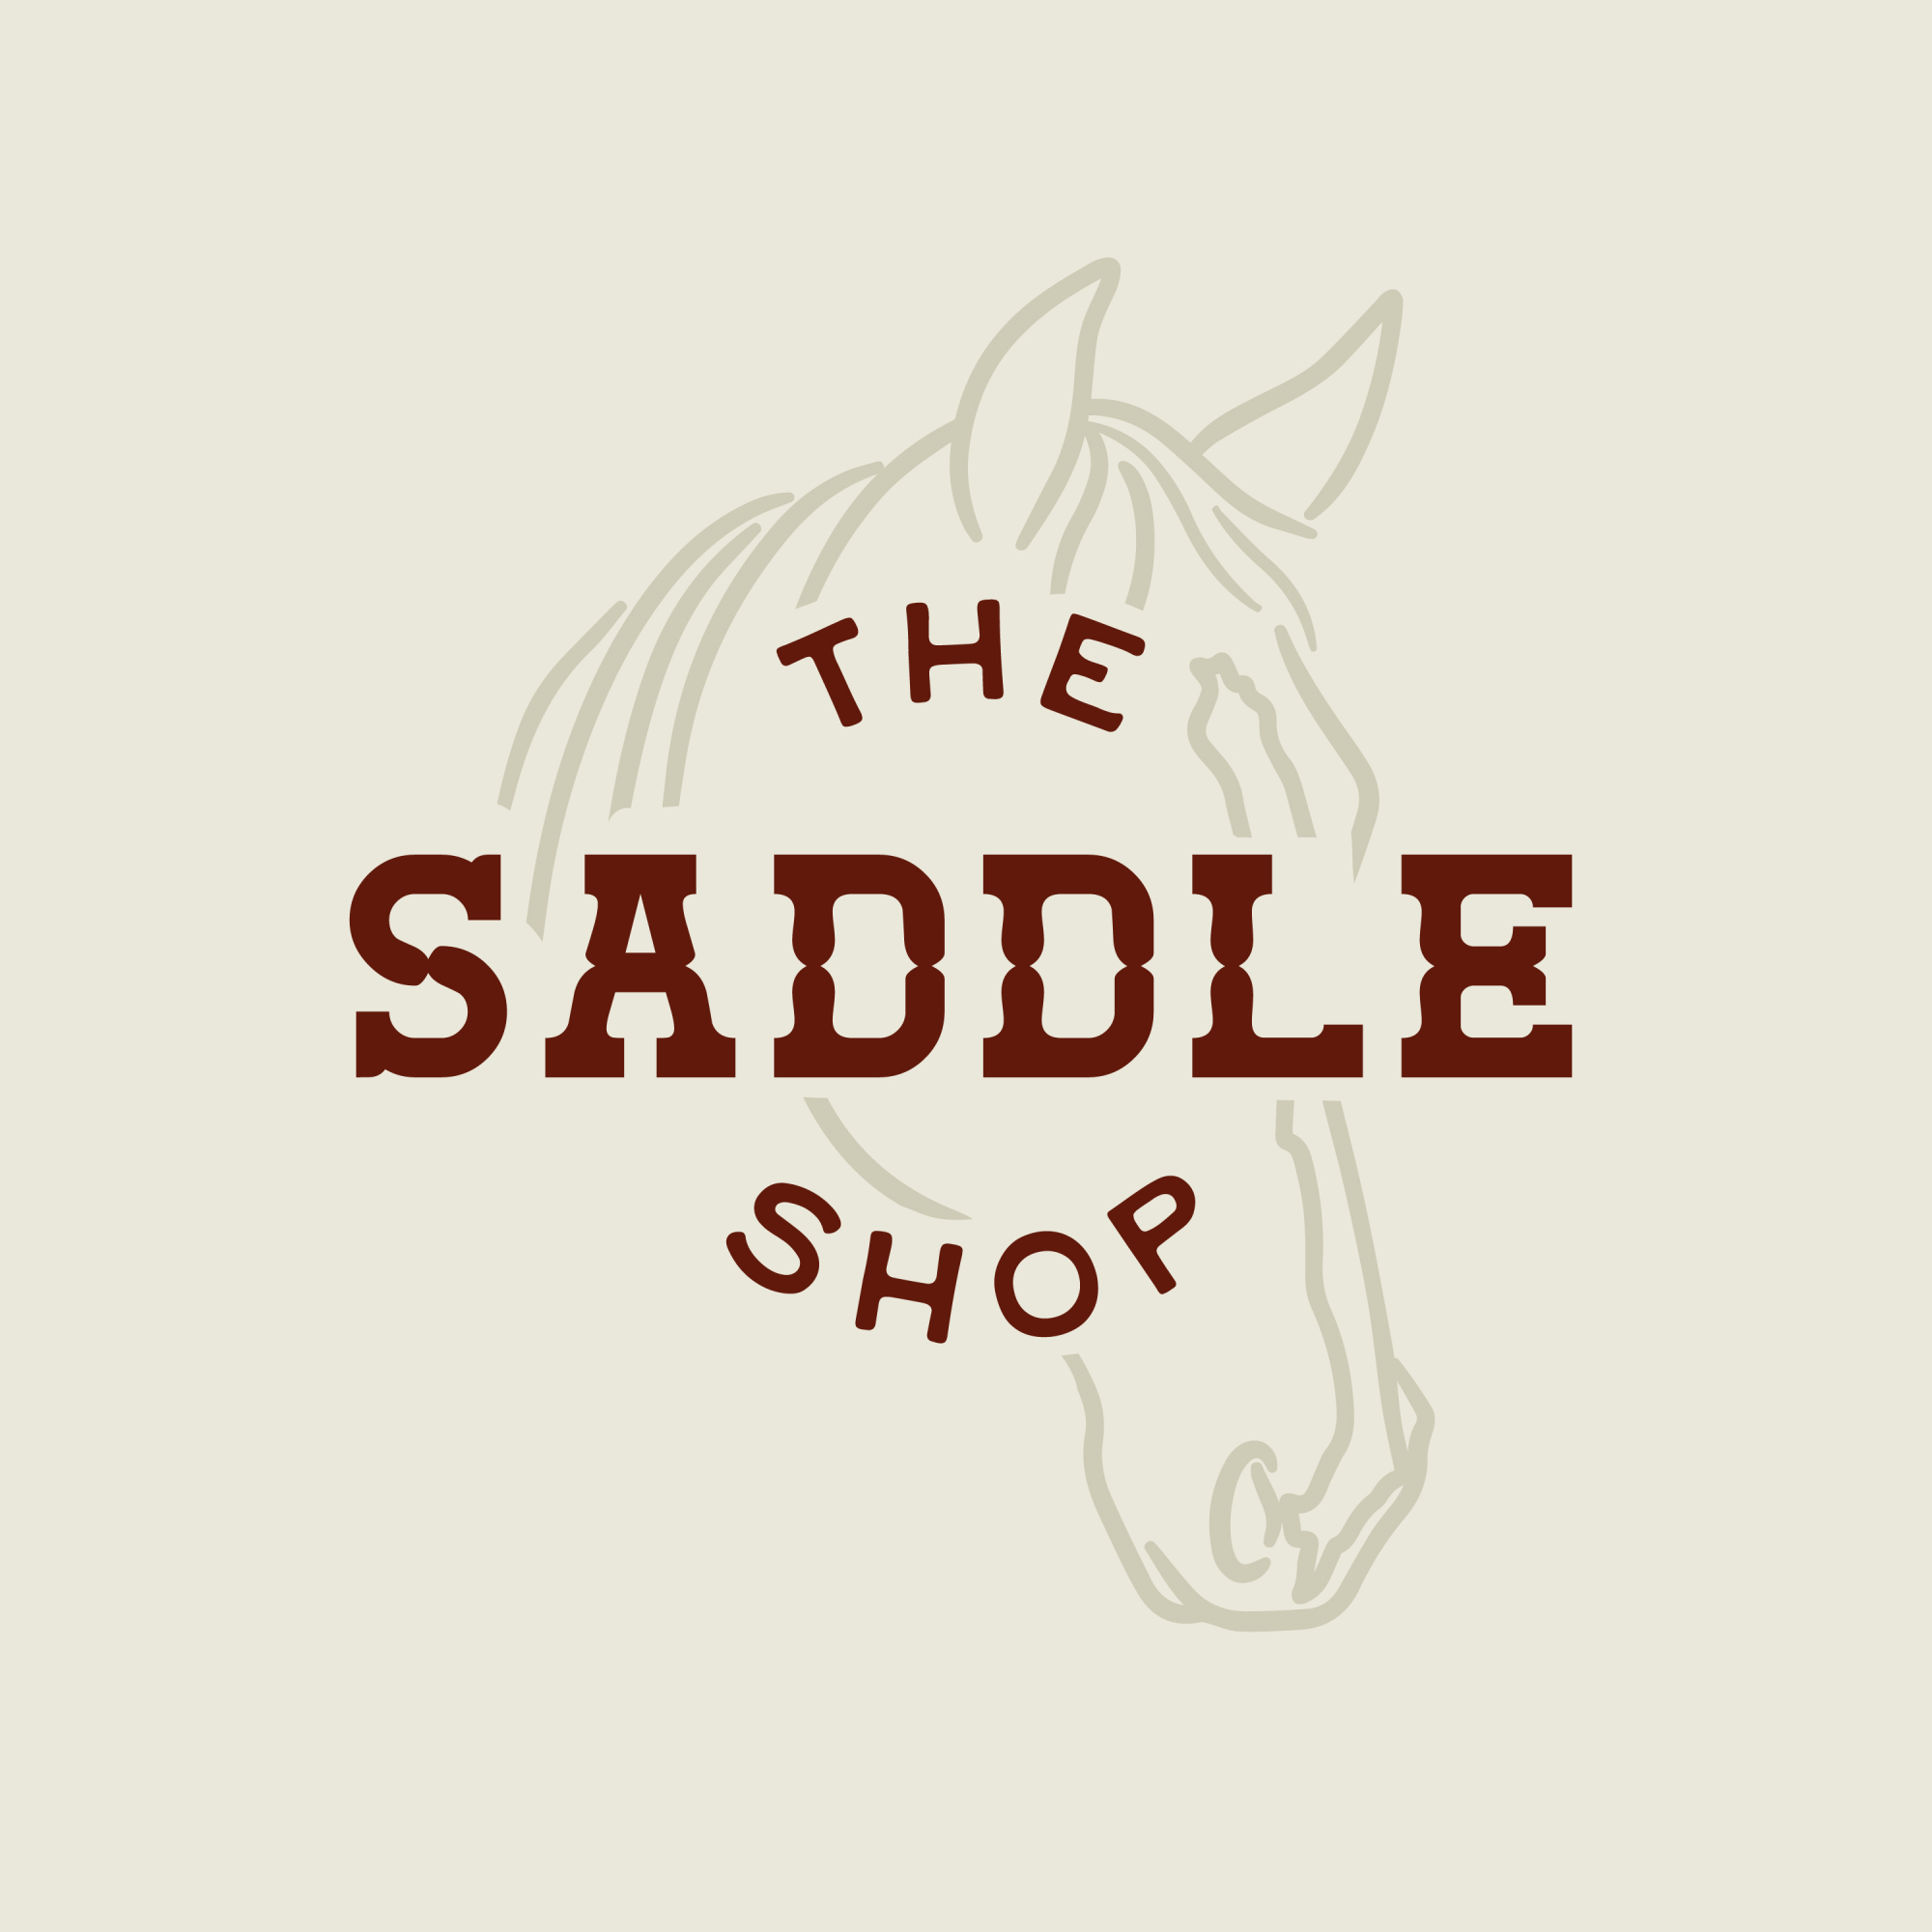 The Saddle Shop logo